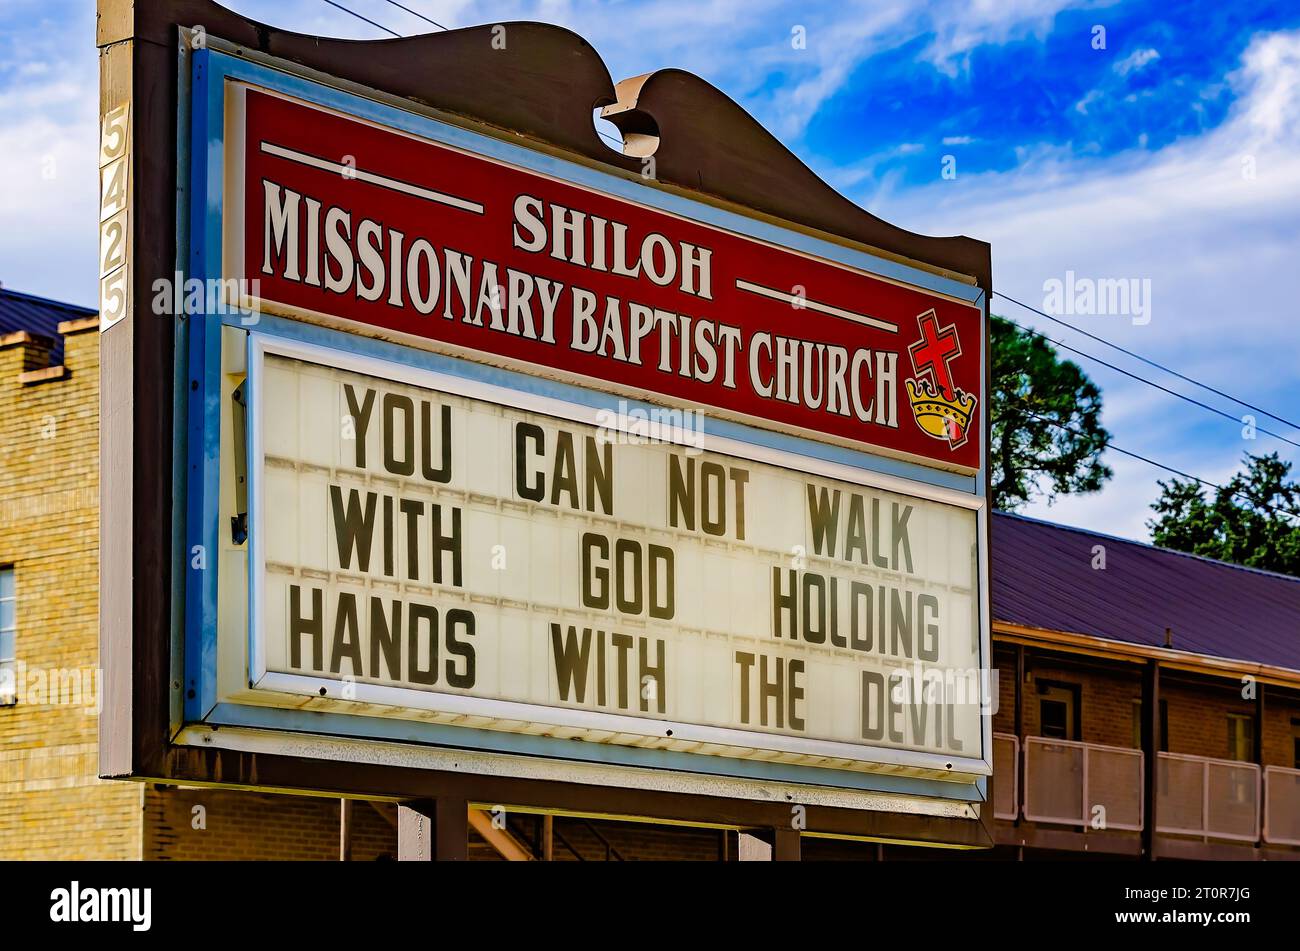 La chiesa battista missionaria Shiloh mostra un messaggio su come camminare con Dio sul suo cartello della chiesa, il 7 ottobre 2023, a Moss Point, Mississippi. Foto Stock